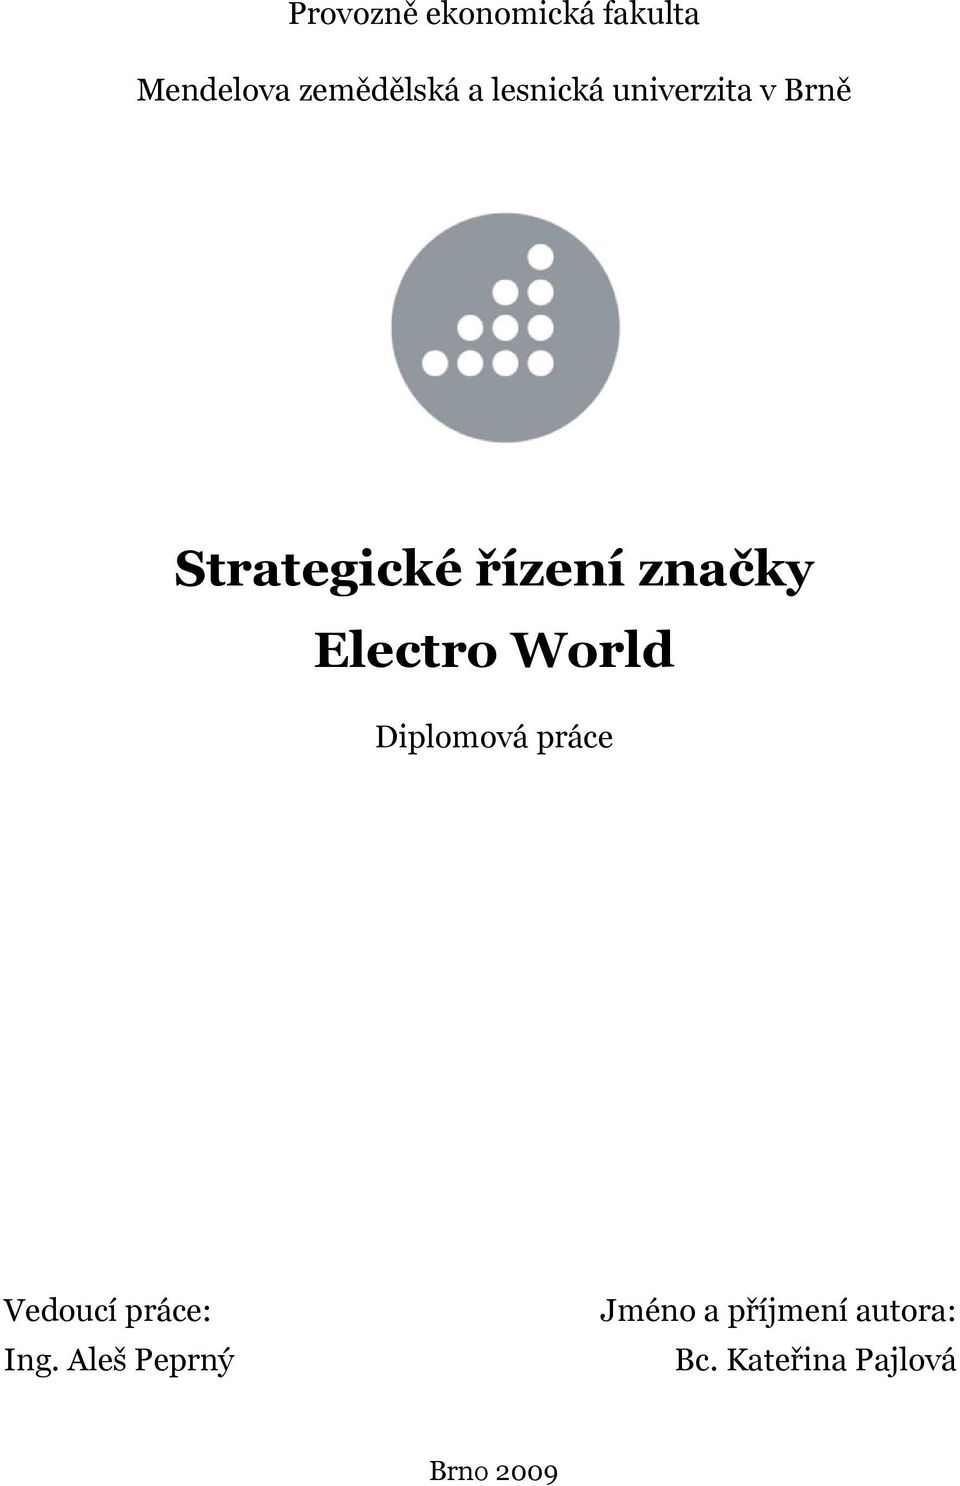 Strategické řízení značky Electro World - PDF Stažení zdarma